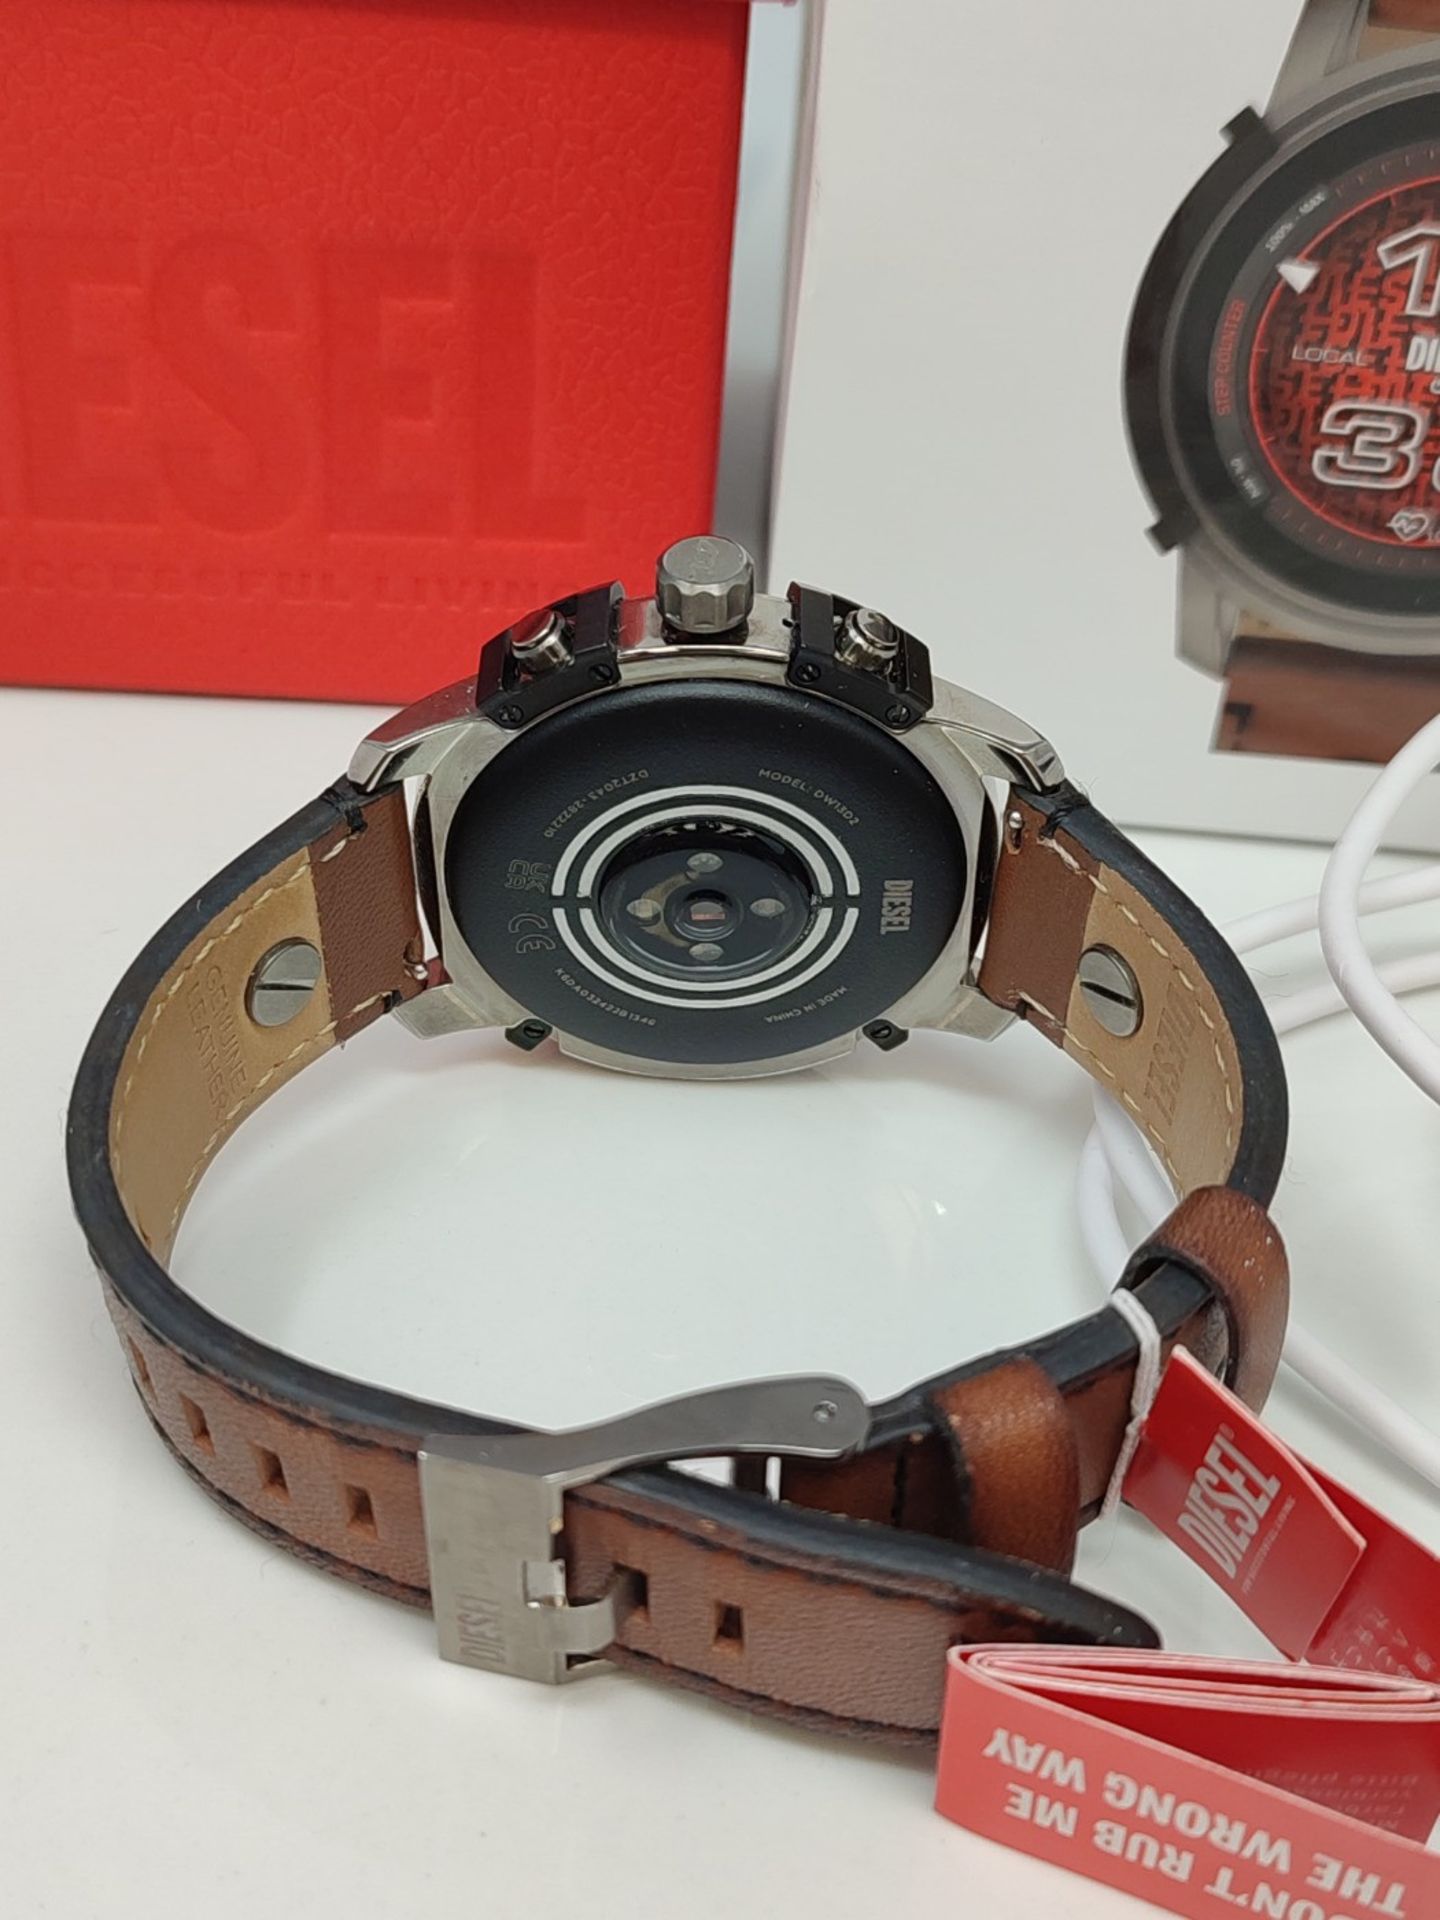 RRP £329.00 Diesel smartwacth for Men Gen 6 Touchscreen Smartwatch with Speaker, Heart Rate, NFC, - Image 2 of 2